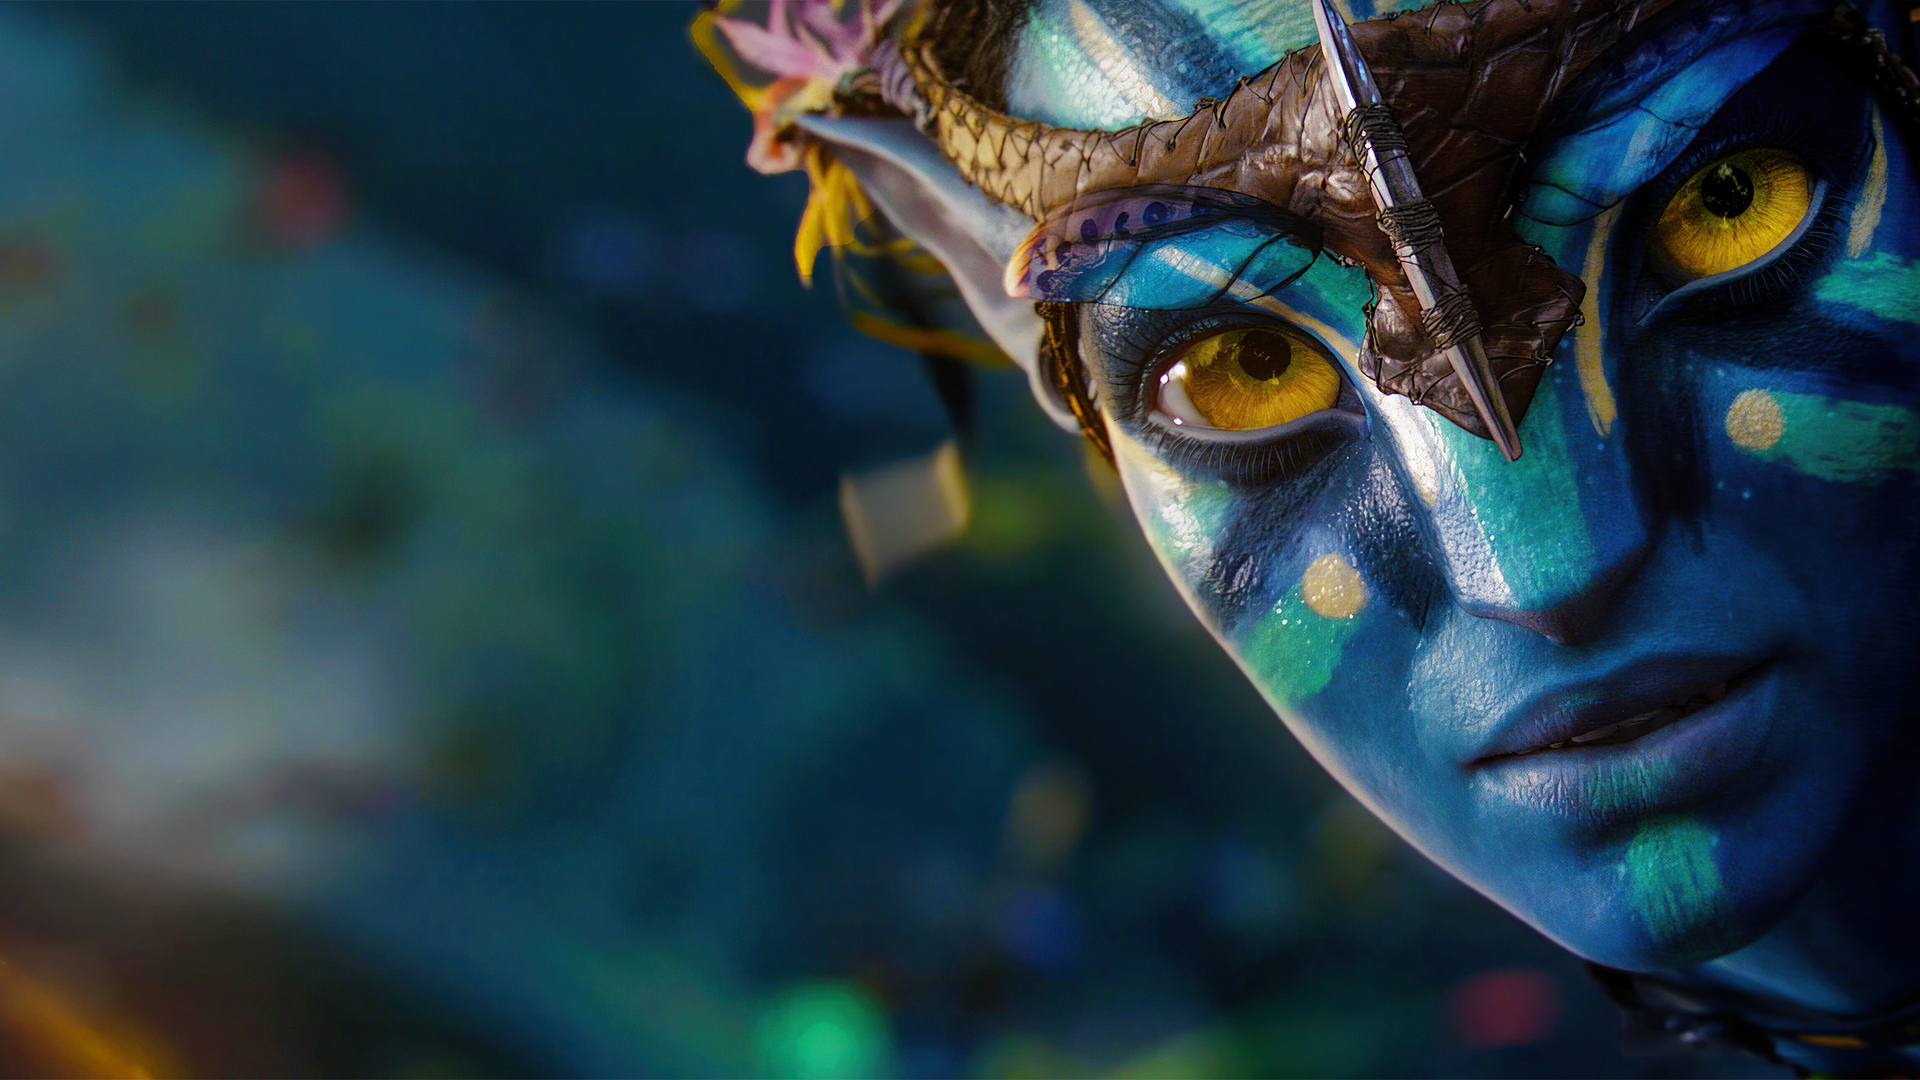 Doanh thu toàn cầu của Avatar vượt 1 tỷ USD trong thời gian kỷ lục  Báo  Thái Bình điện tử